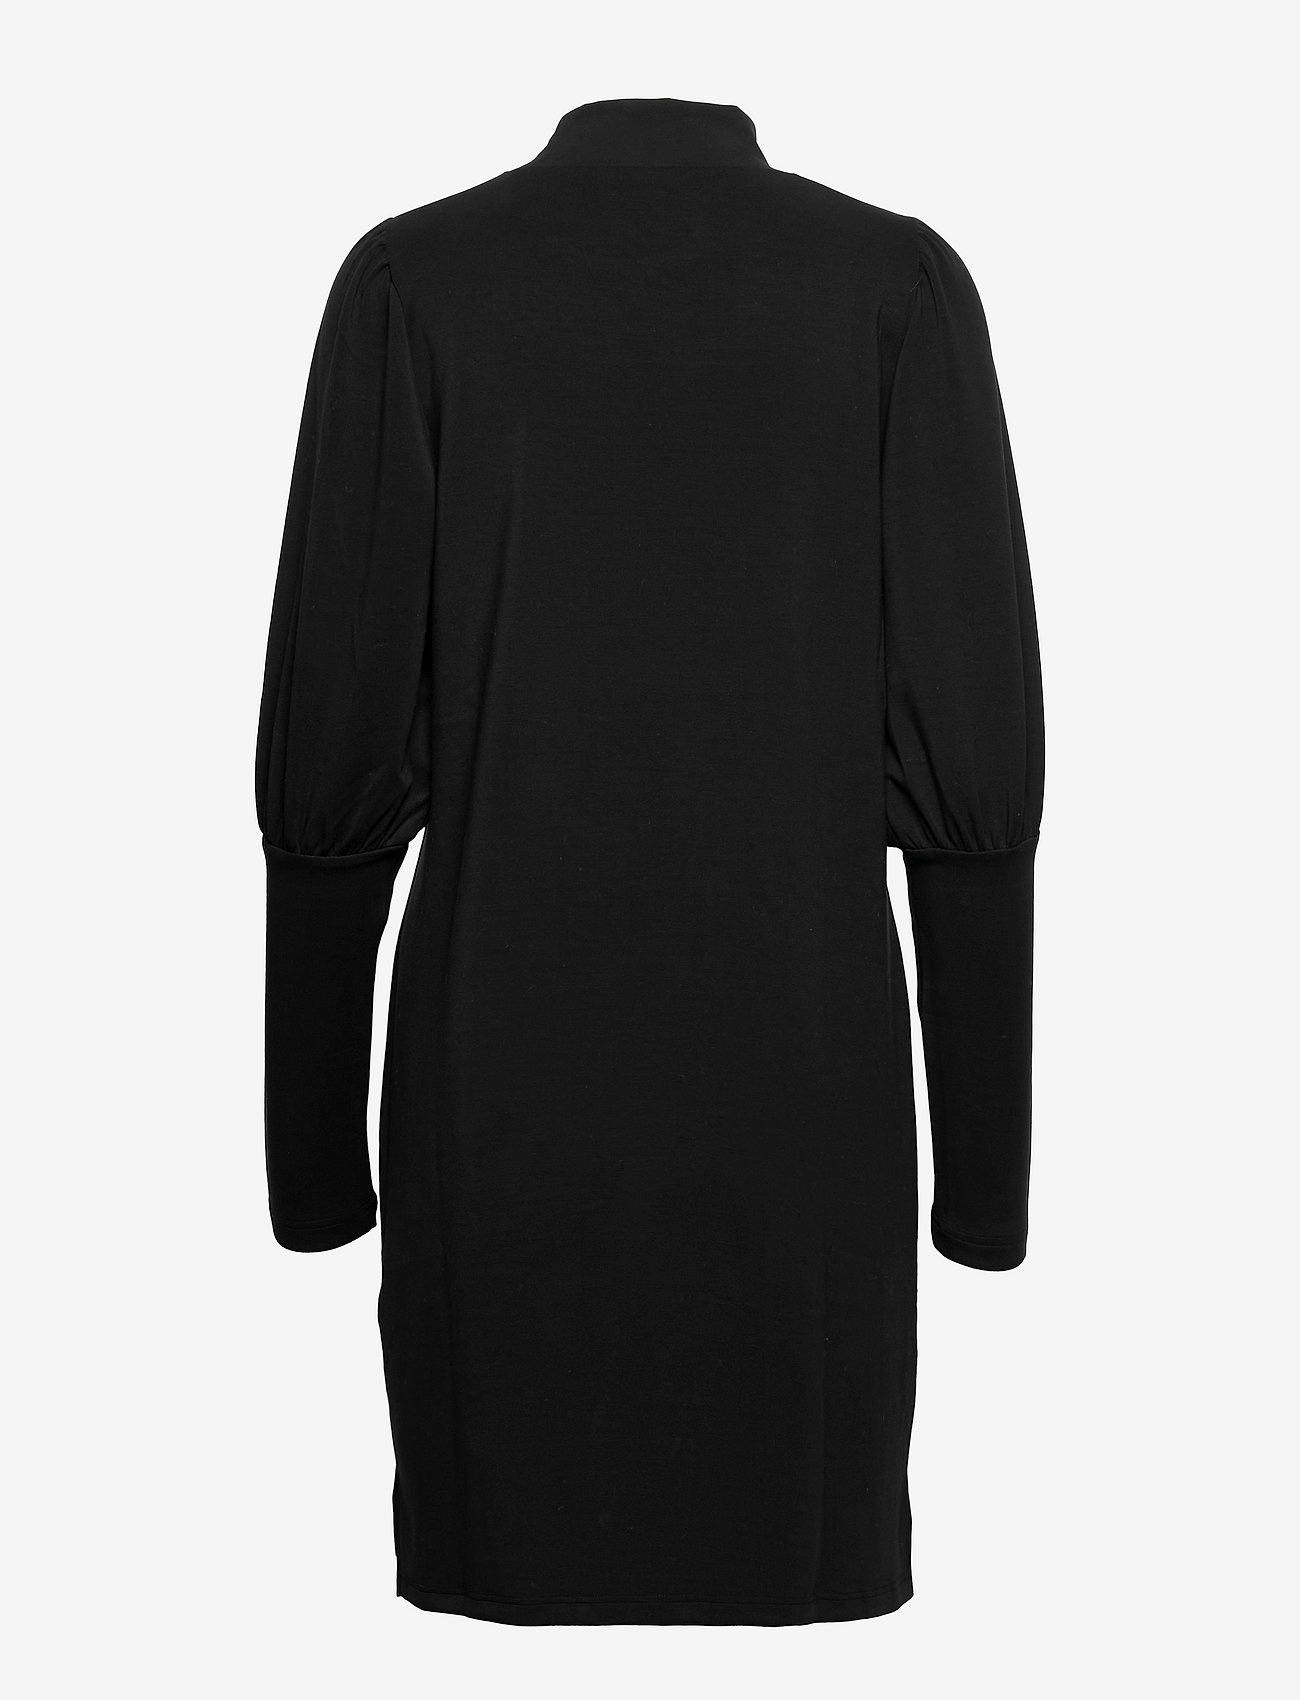 My Essential Wardrobe - MWElle Puff Dress - kurze kleider - black - 1